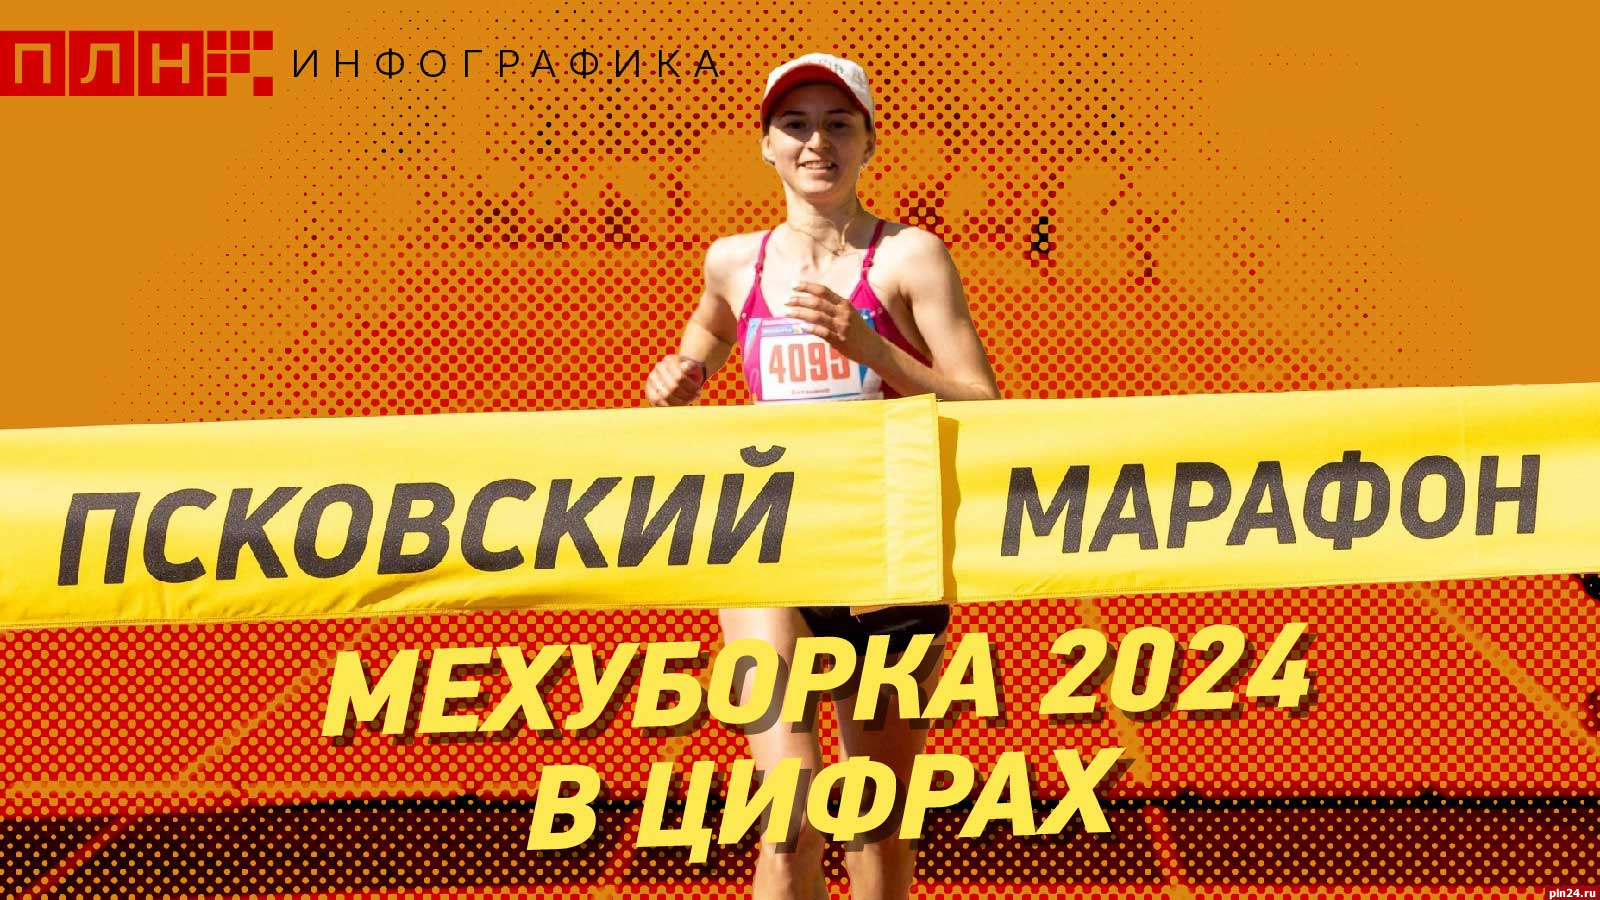 Псковский марафон Мехуборка-2024 в цифрах. ИНФОГРАФИКА